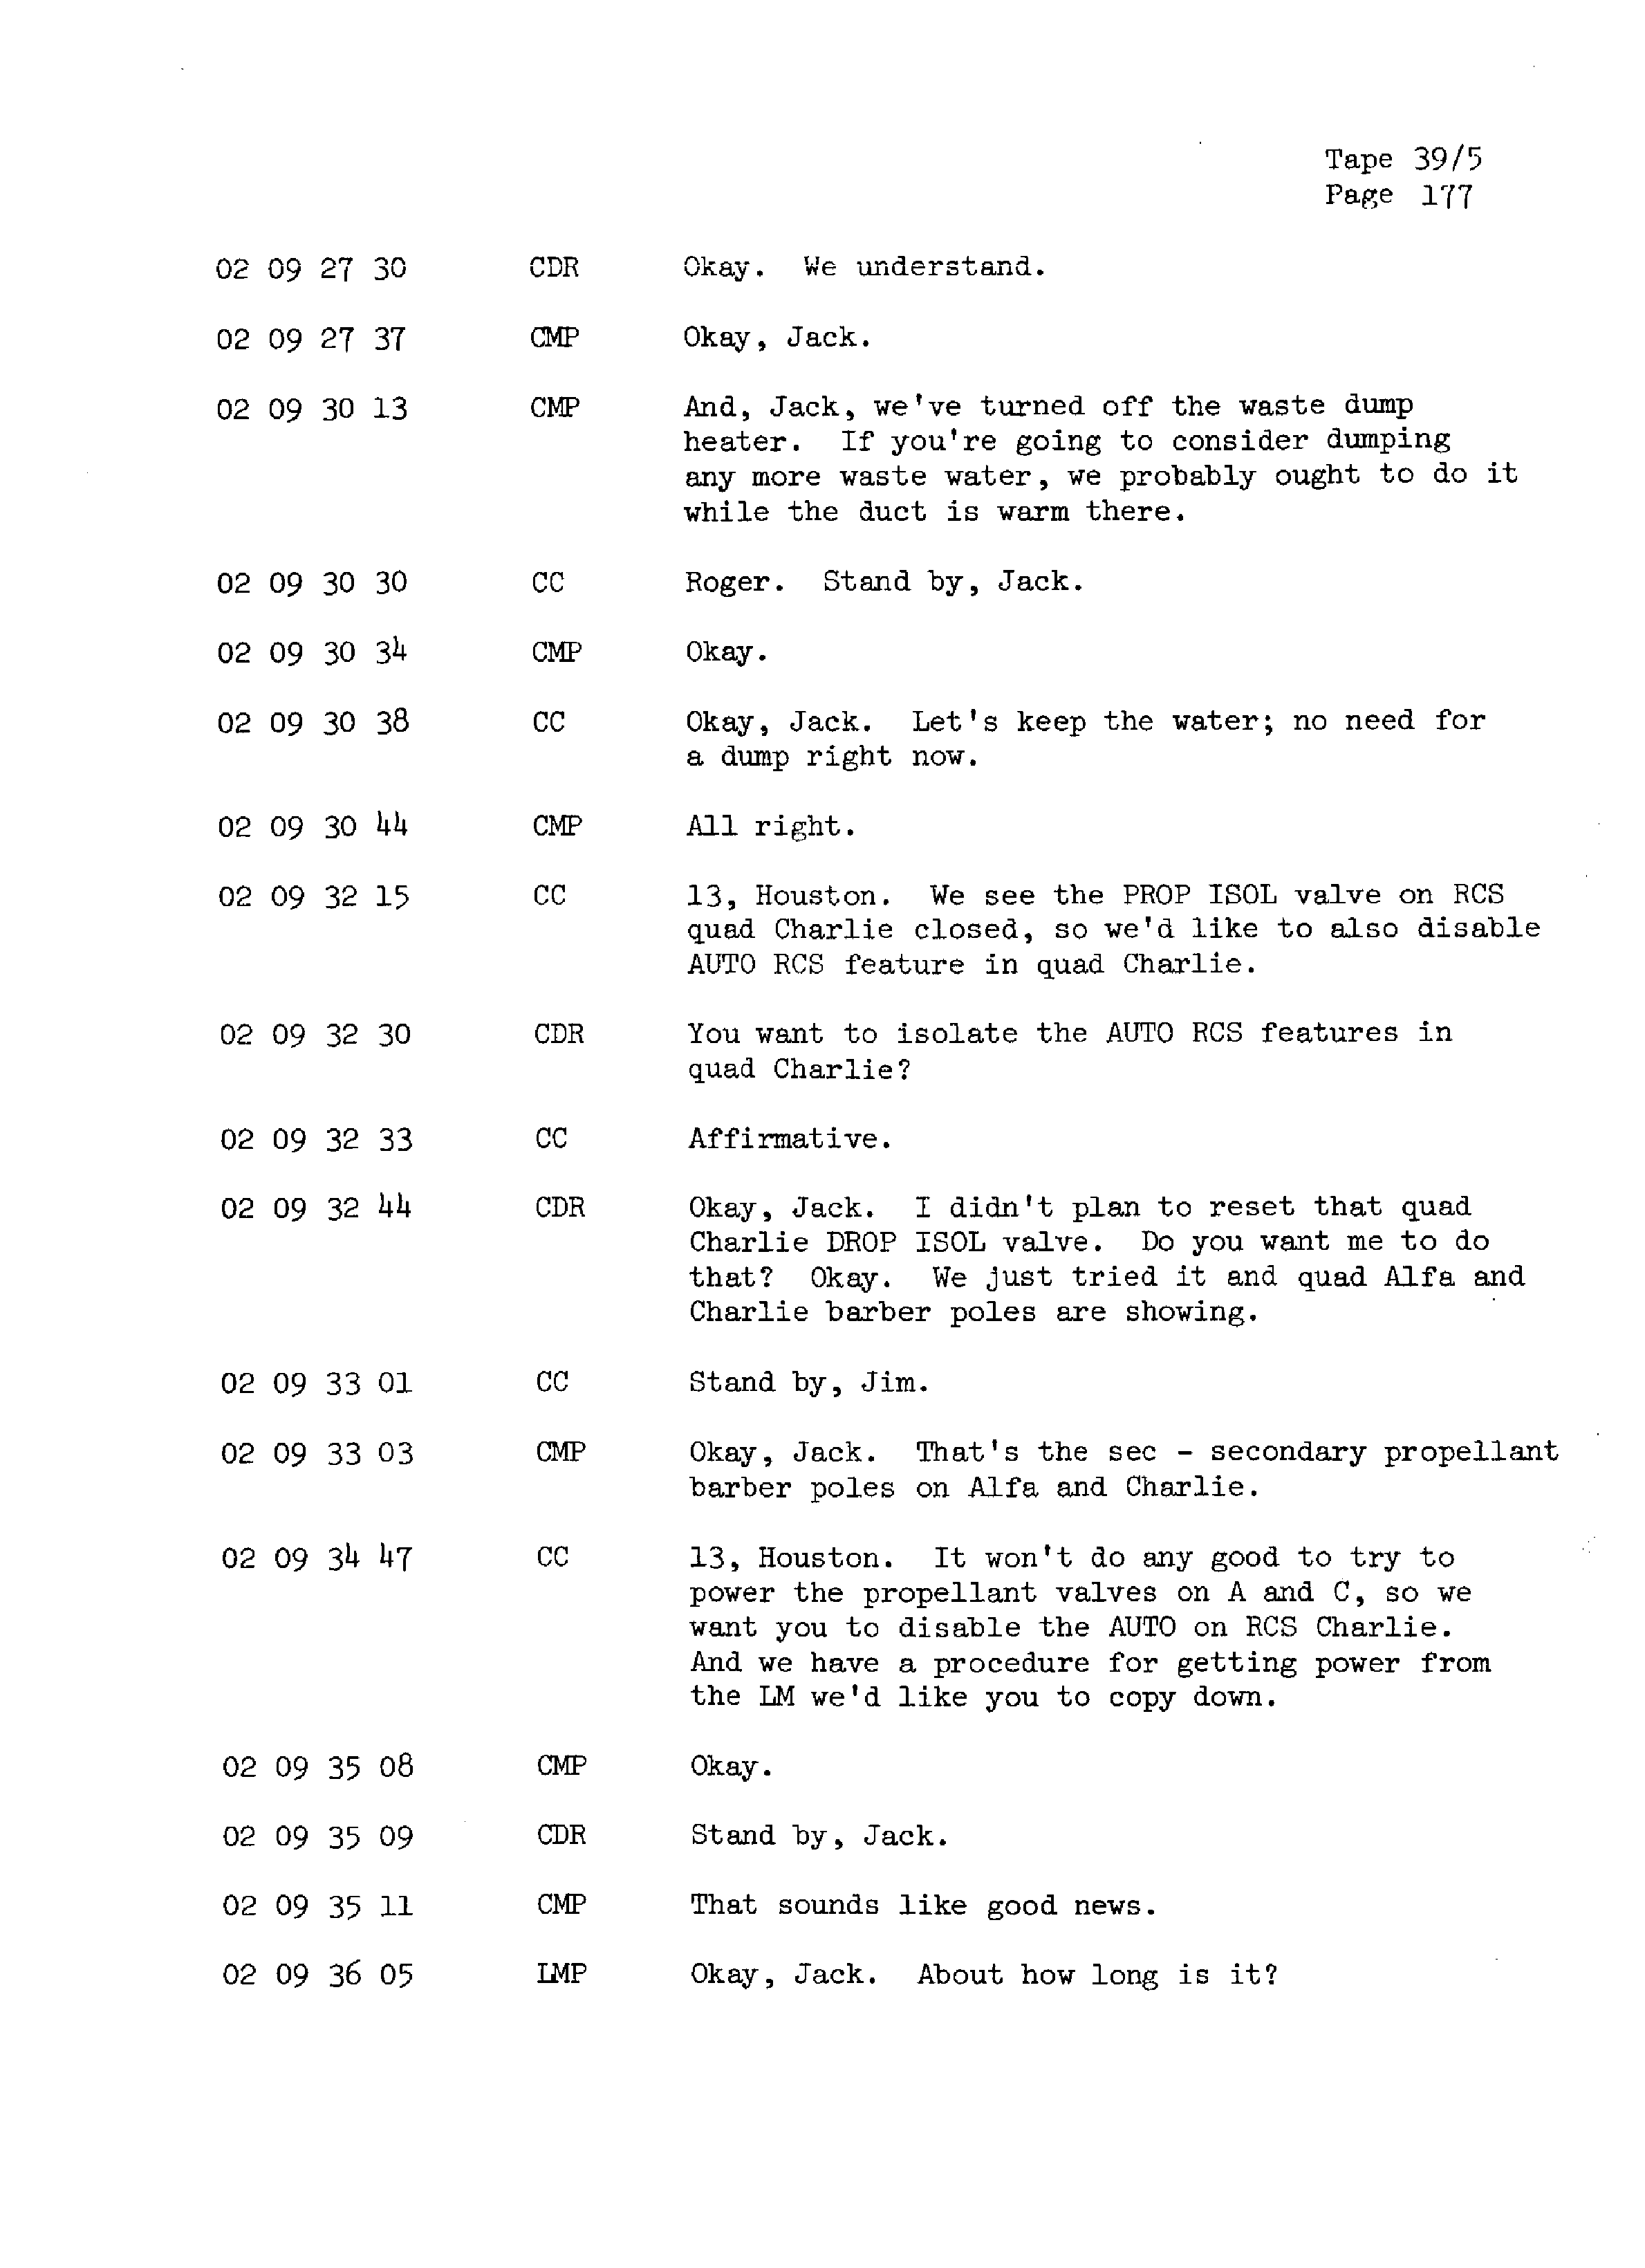 Page 184 of Apollo 13’s original transcript